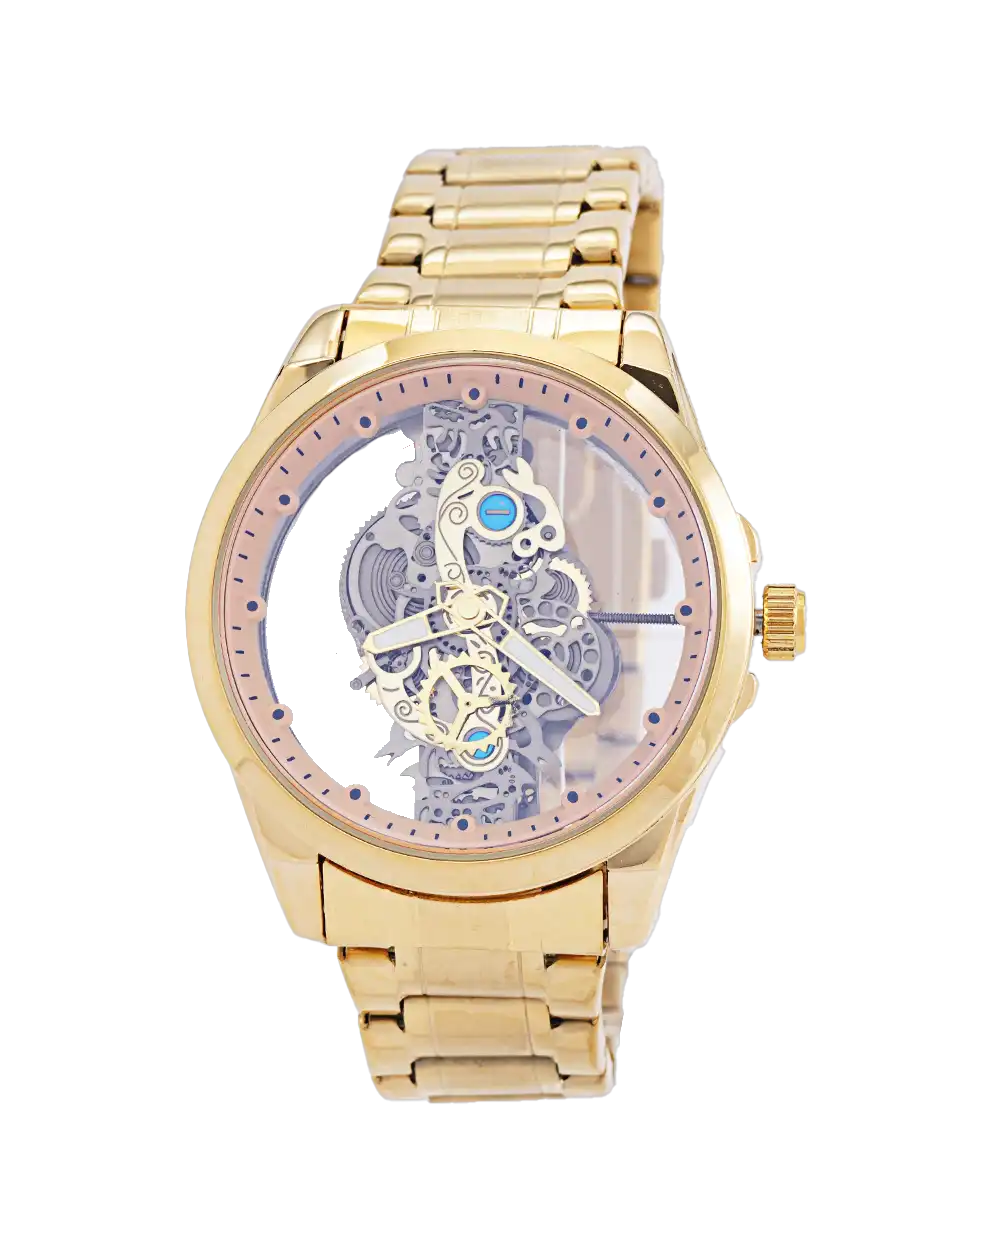 خرید ساعت مچی مردانه بین باند BIN BOND صفحه اسکلتون مدل 1740 رنگ طلایی با بهترین قیمت به همراه جعبه ی ساعت و ارسال رایگان به سراسر ایران